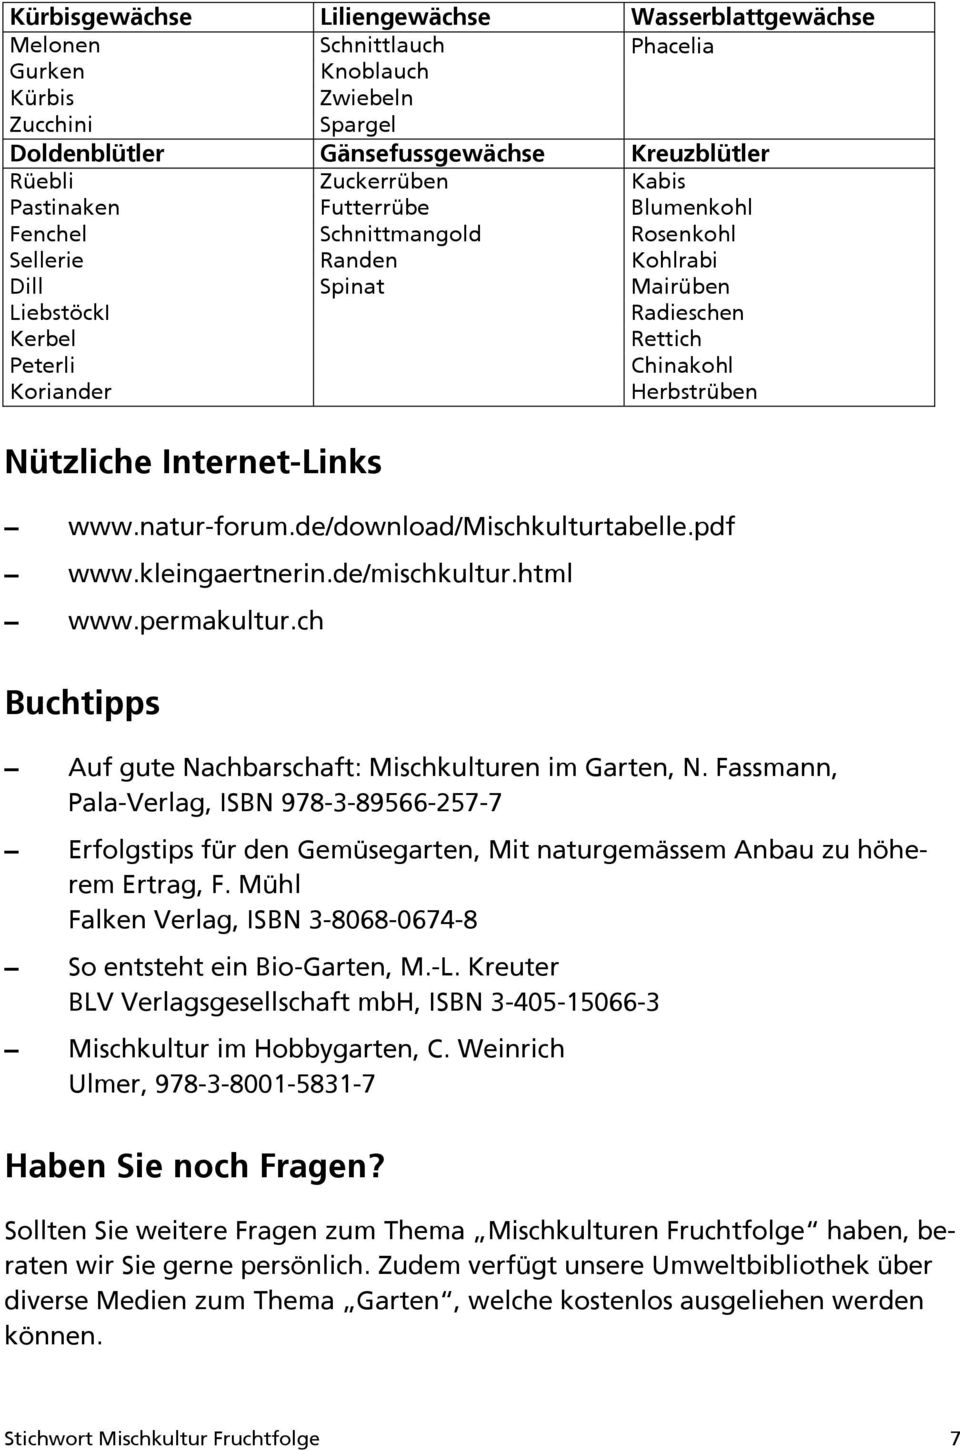 Internet-Links www.natur-forum.de/download/mischkulturtabelle.pdf www.kleingaertnerin.de/mischkultur.html www.permakultur.ch Buchtipps Auf gute Nachbarschaft: Mischkulturen im Garten, N.